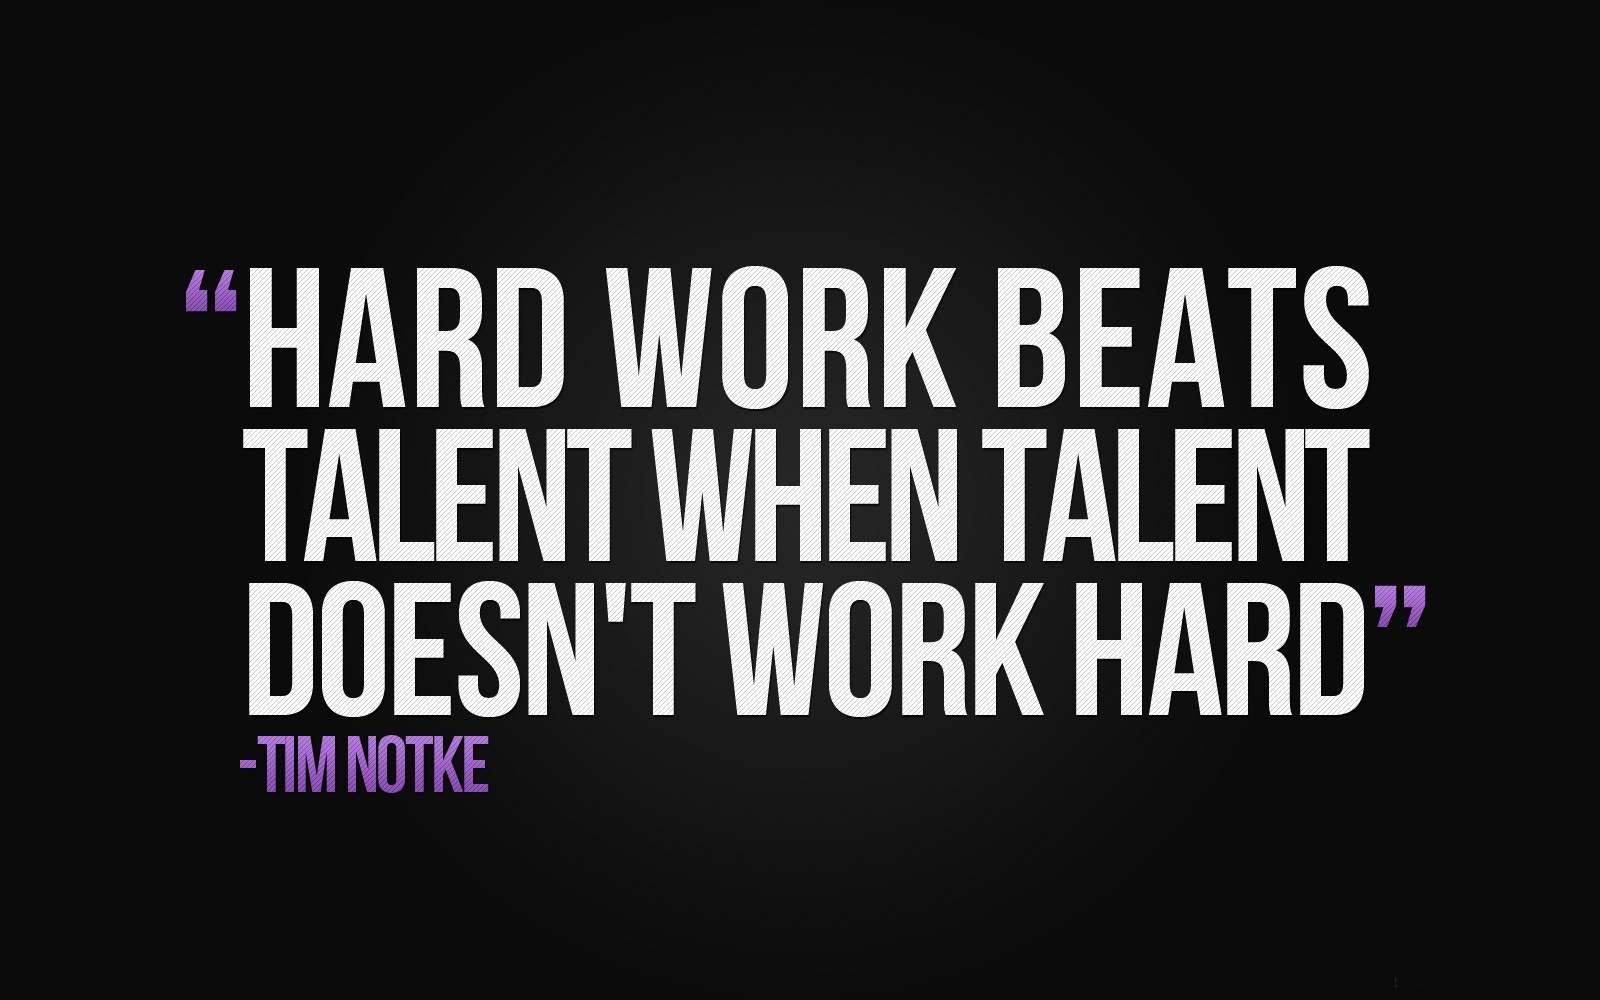 Hard work beats talent when talent doesn’t work hard. – Tim Notke